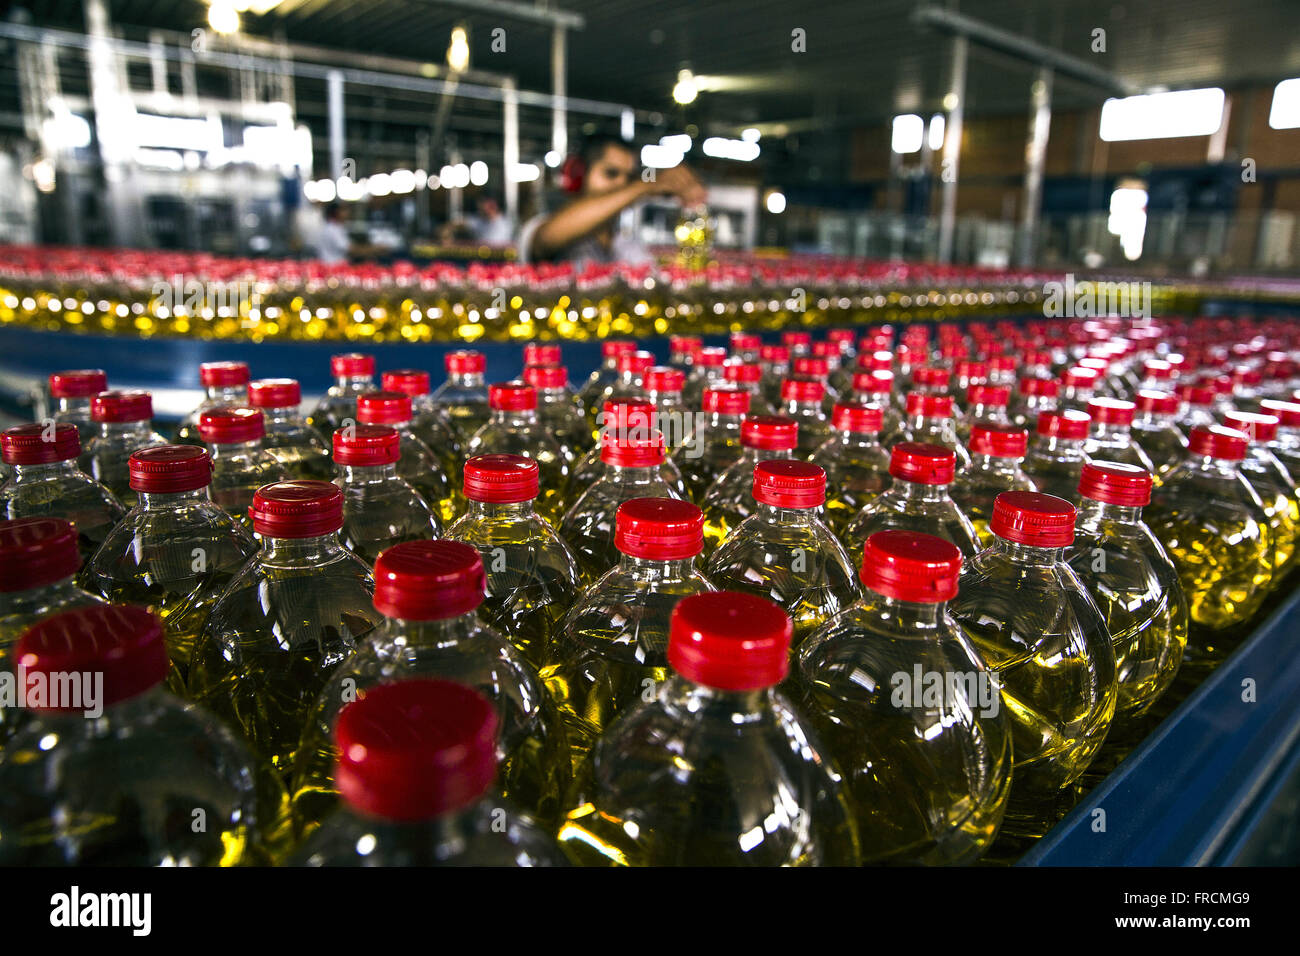 Detalhe de garrafas de óleo vegetal de soja envasado em cooperativa Stock Photo